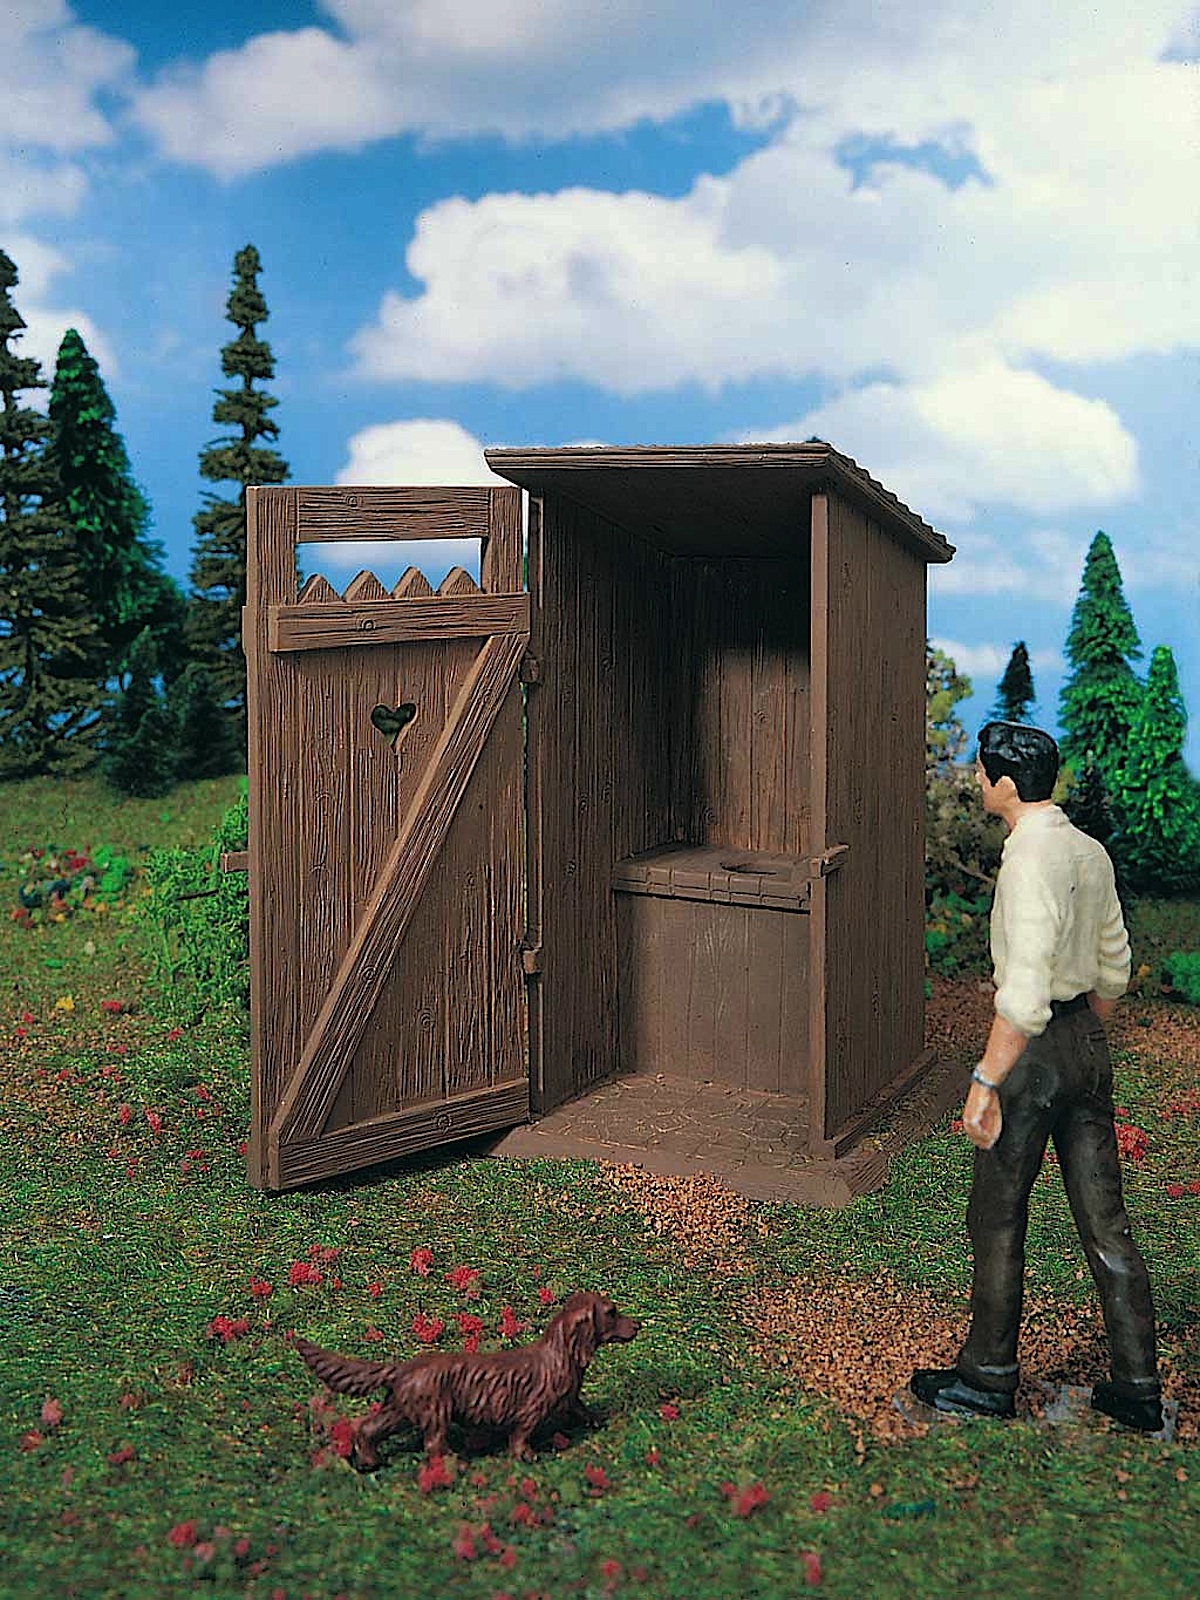 Toilettenhäuschen (Outhouse)